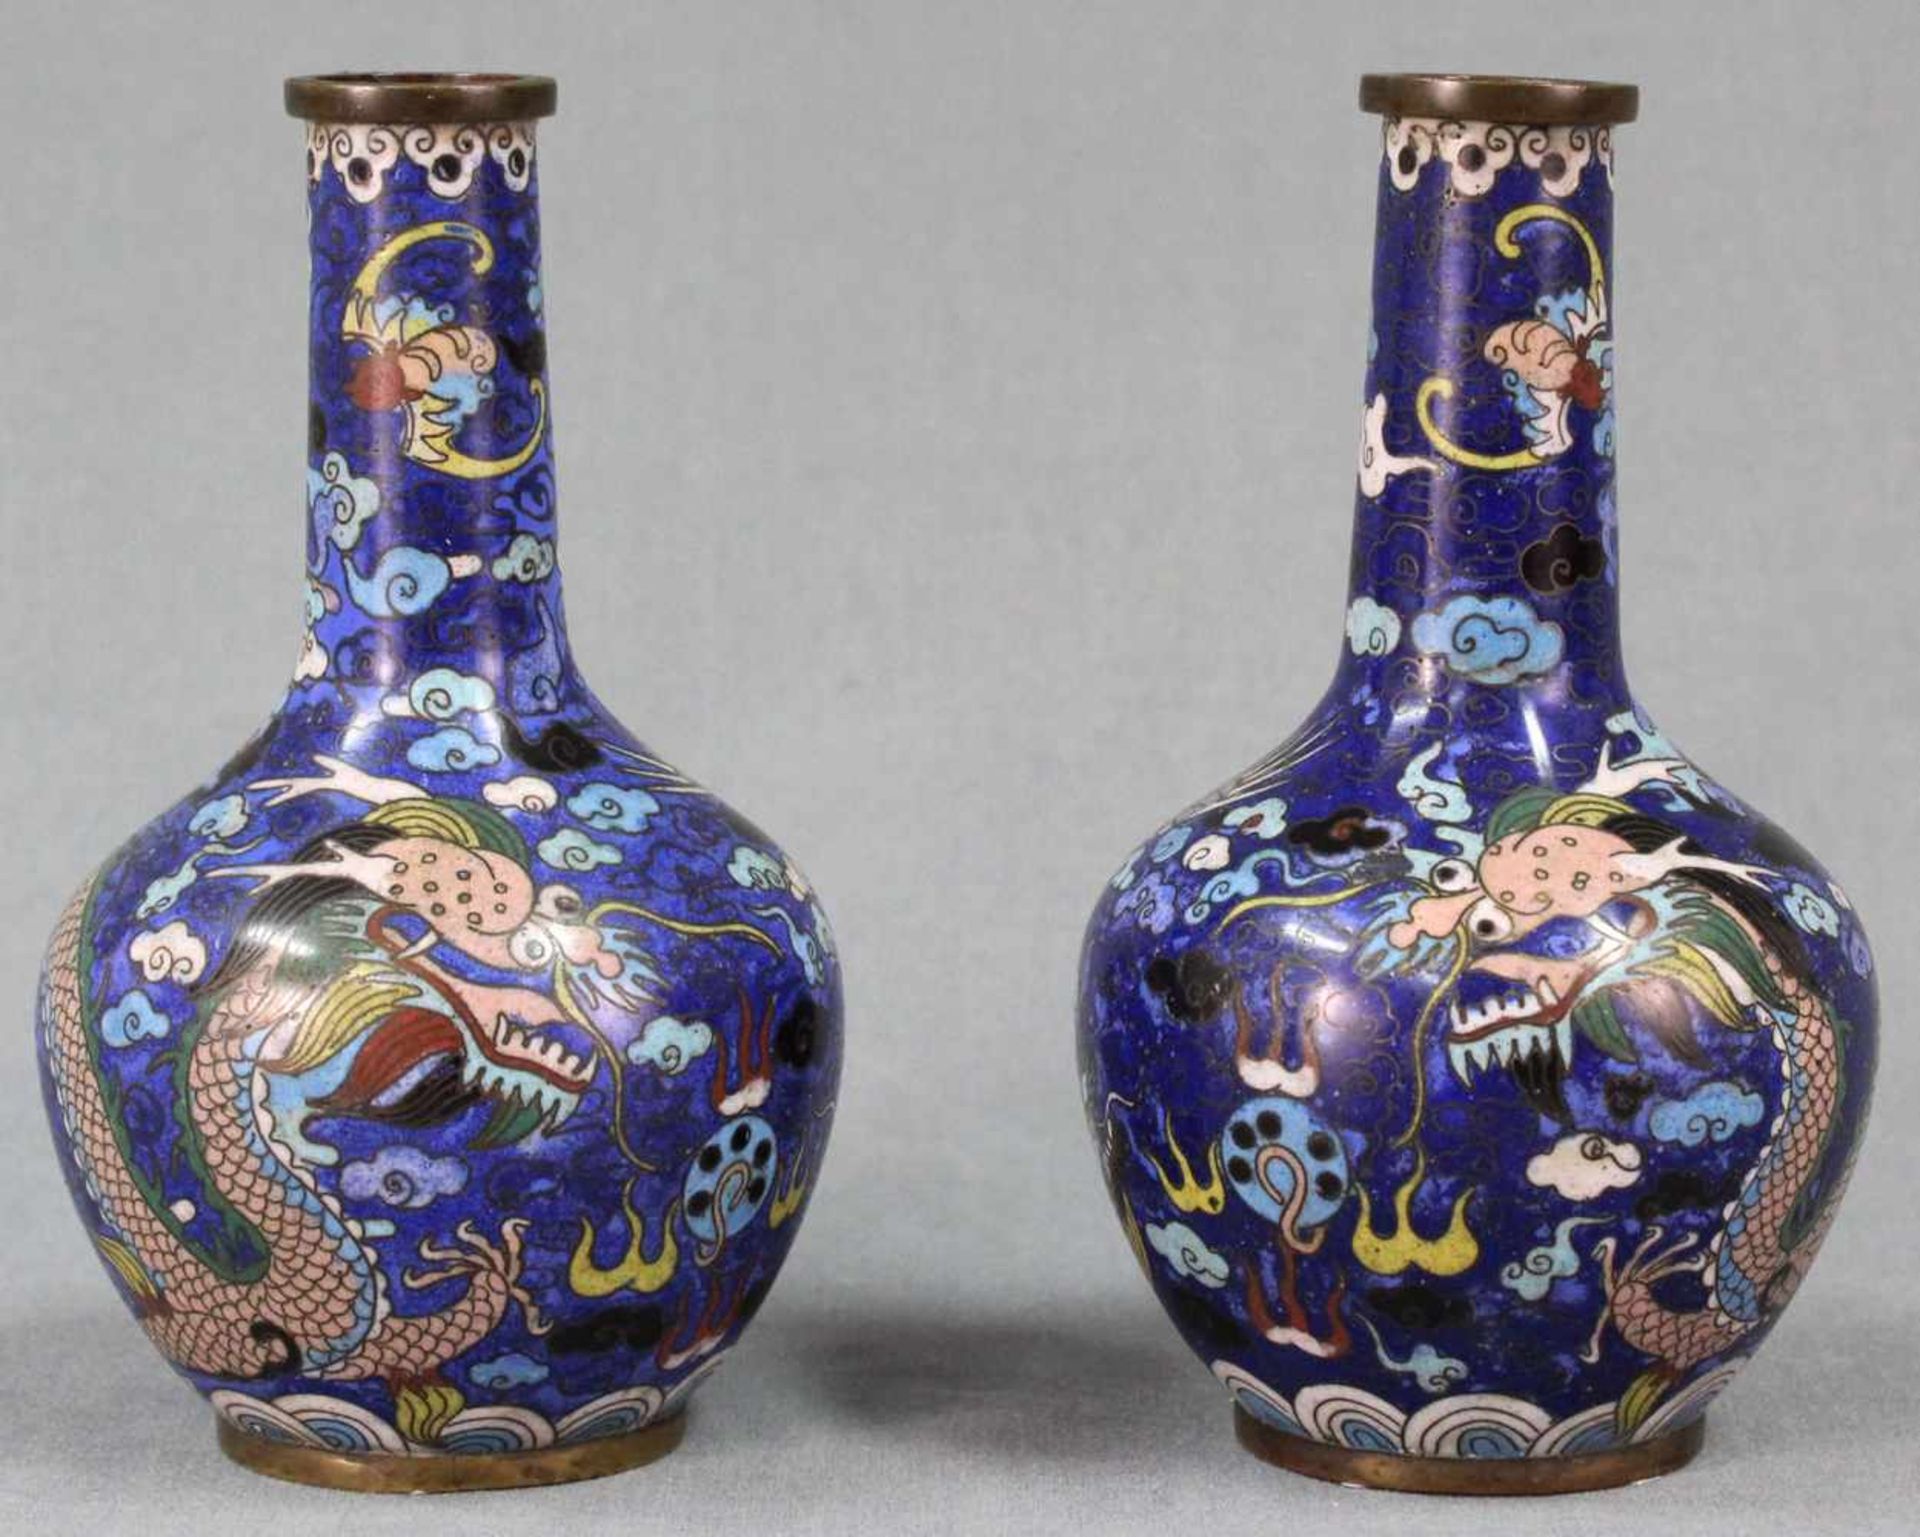 Zwei Claisonne Vasen Japan. Drache jagt die Flammende Perle.Je 16 cm hoch. Wohl Edo-Zeit (1600 -